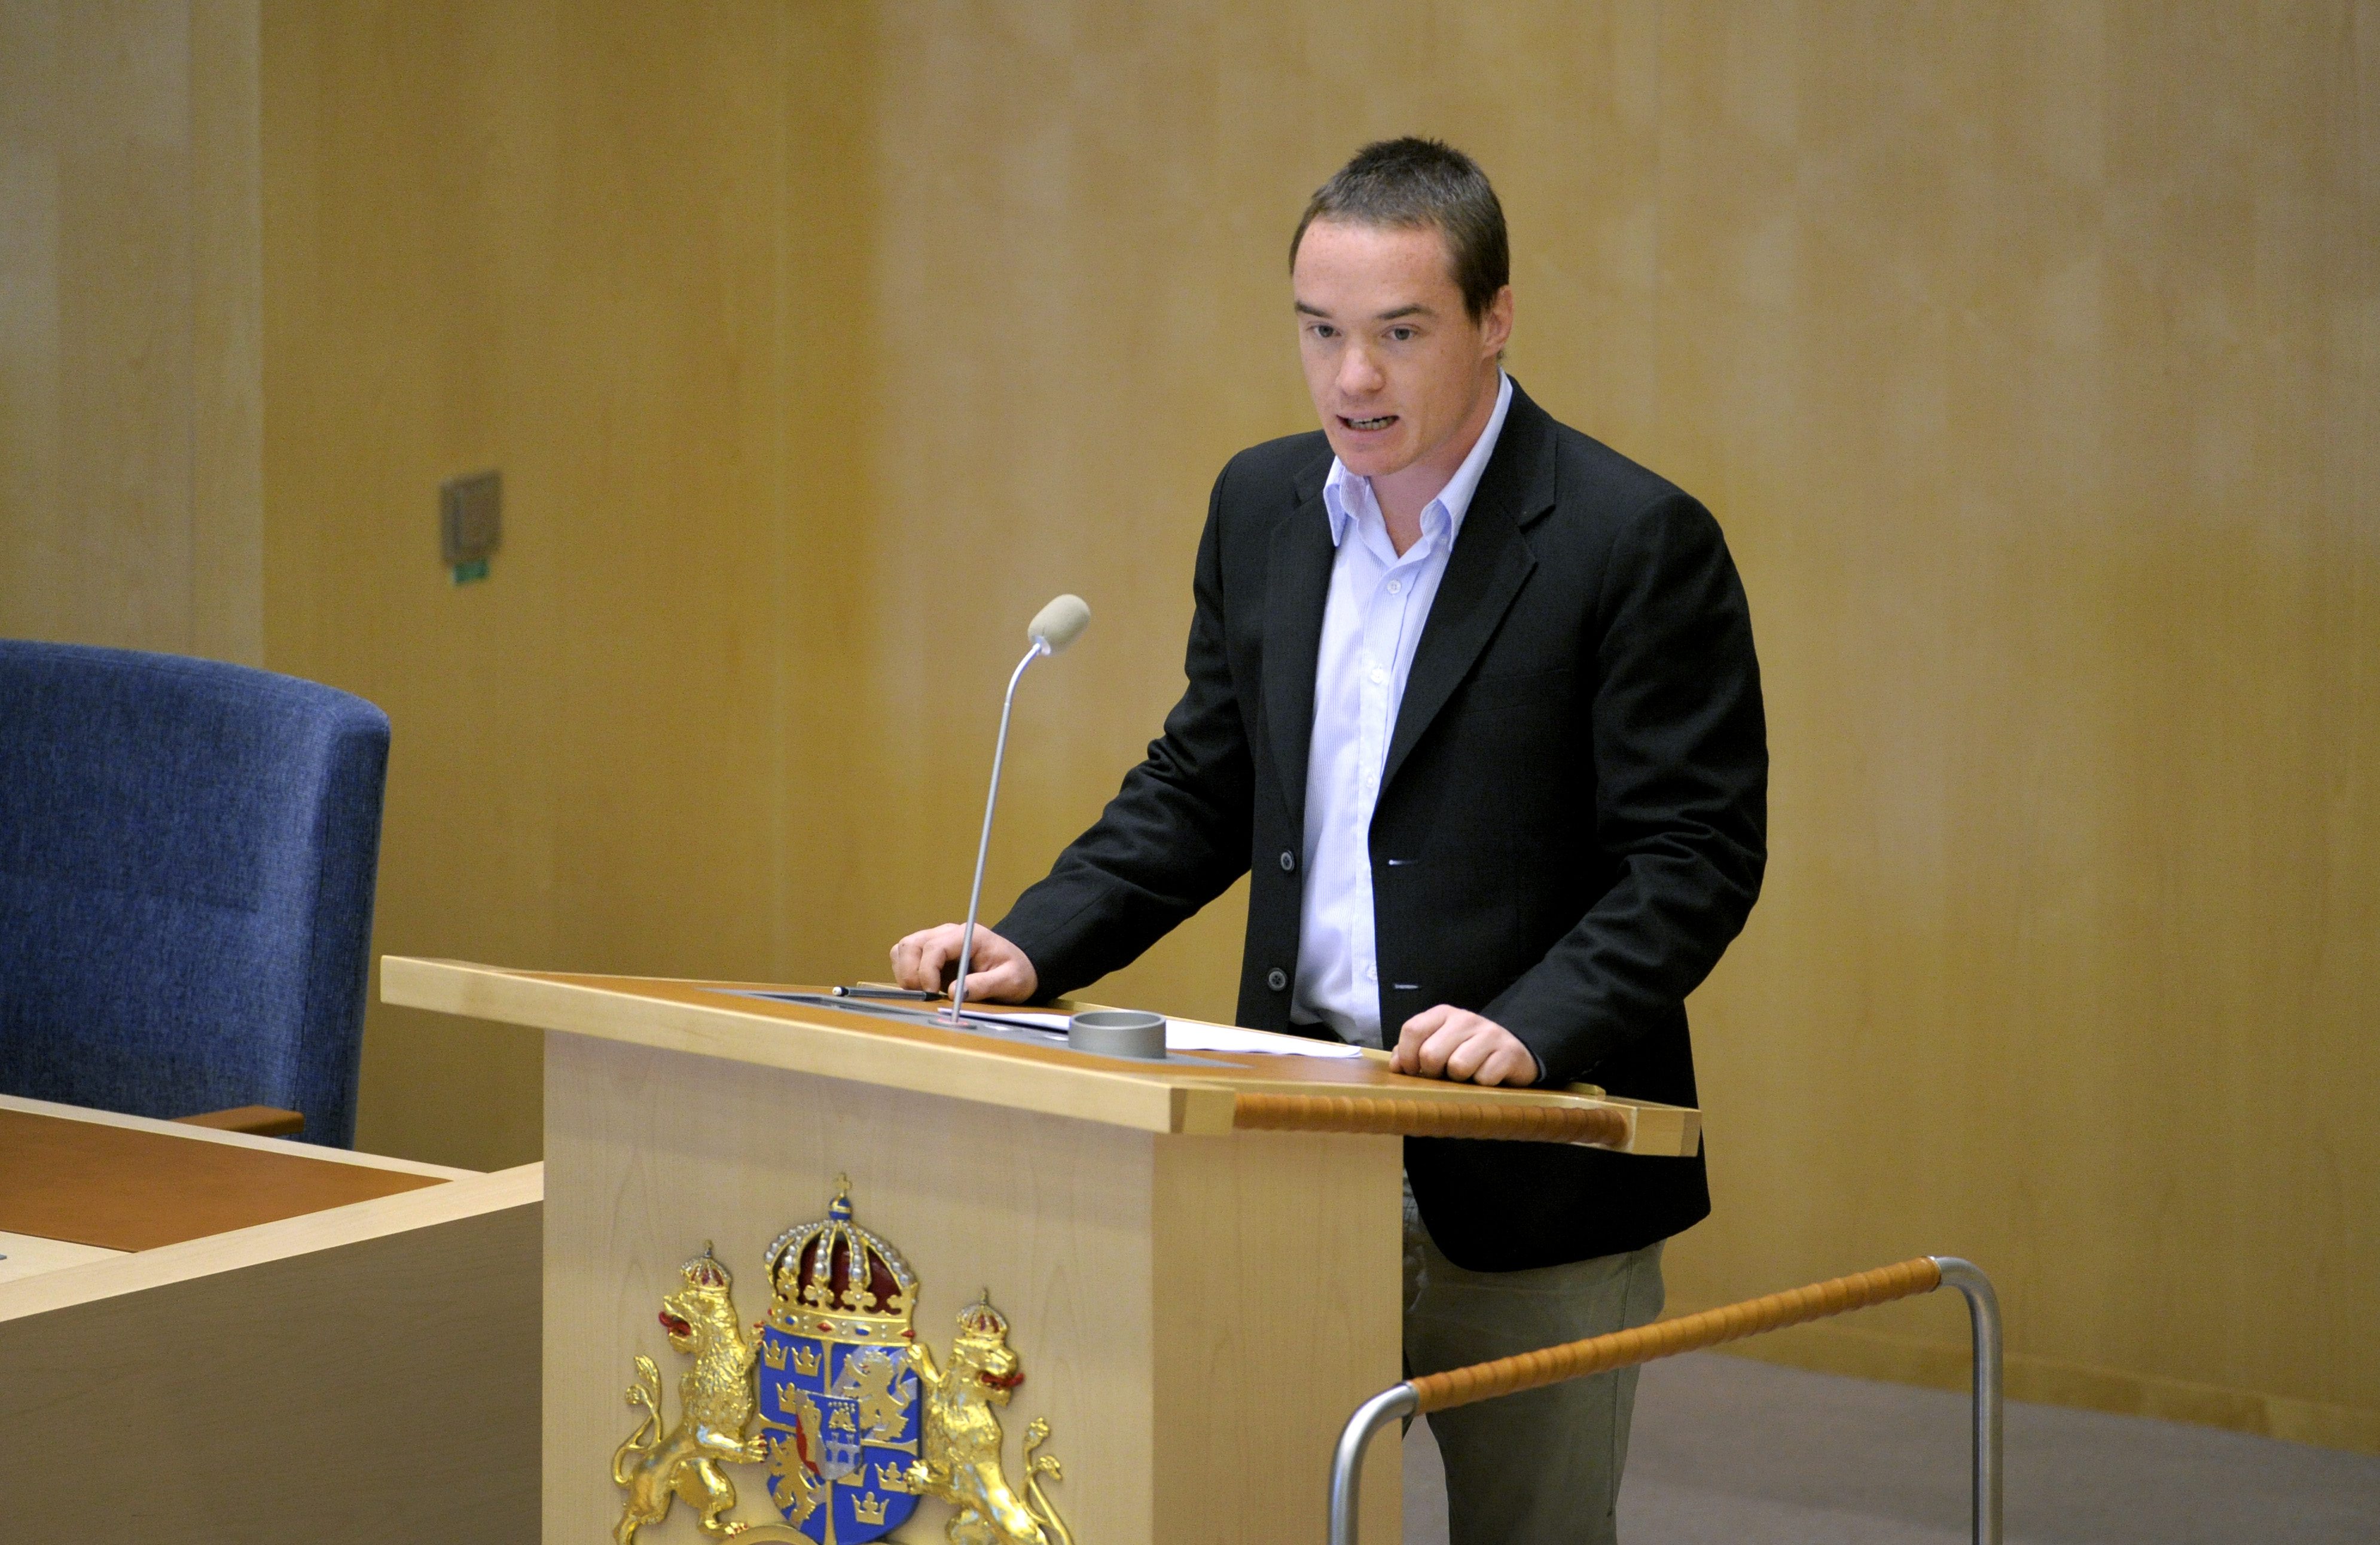 Riksdagsledamoten, Kent Ekeroth, är huvudarrangören bakom SD:s konferens om "islam och islamisering".